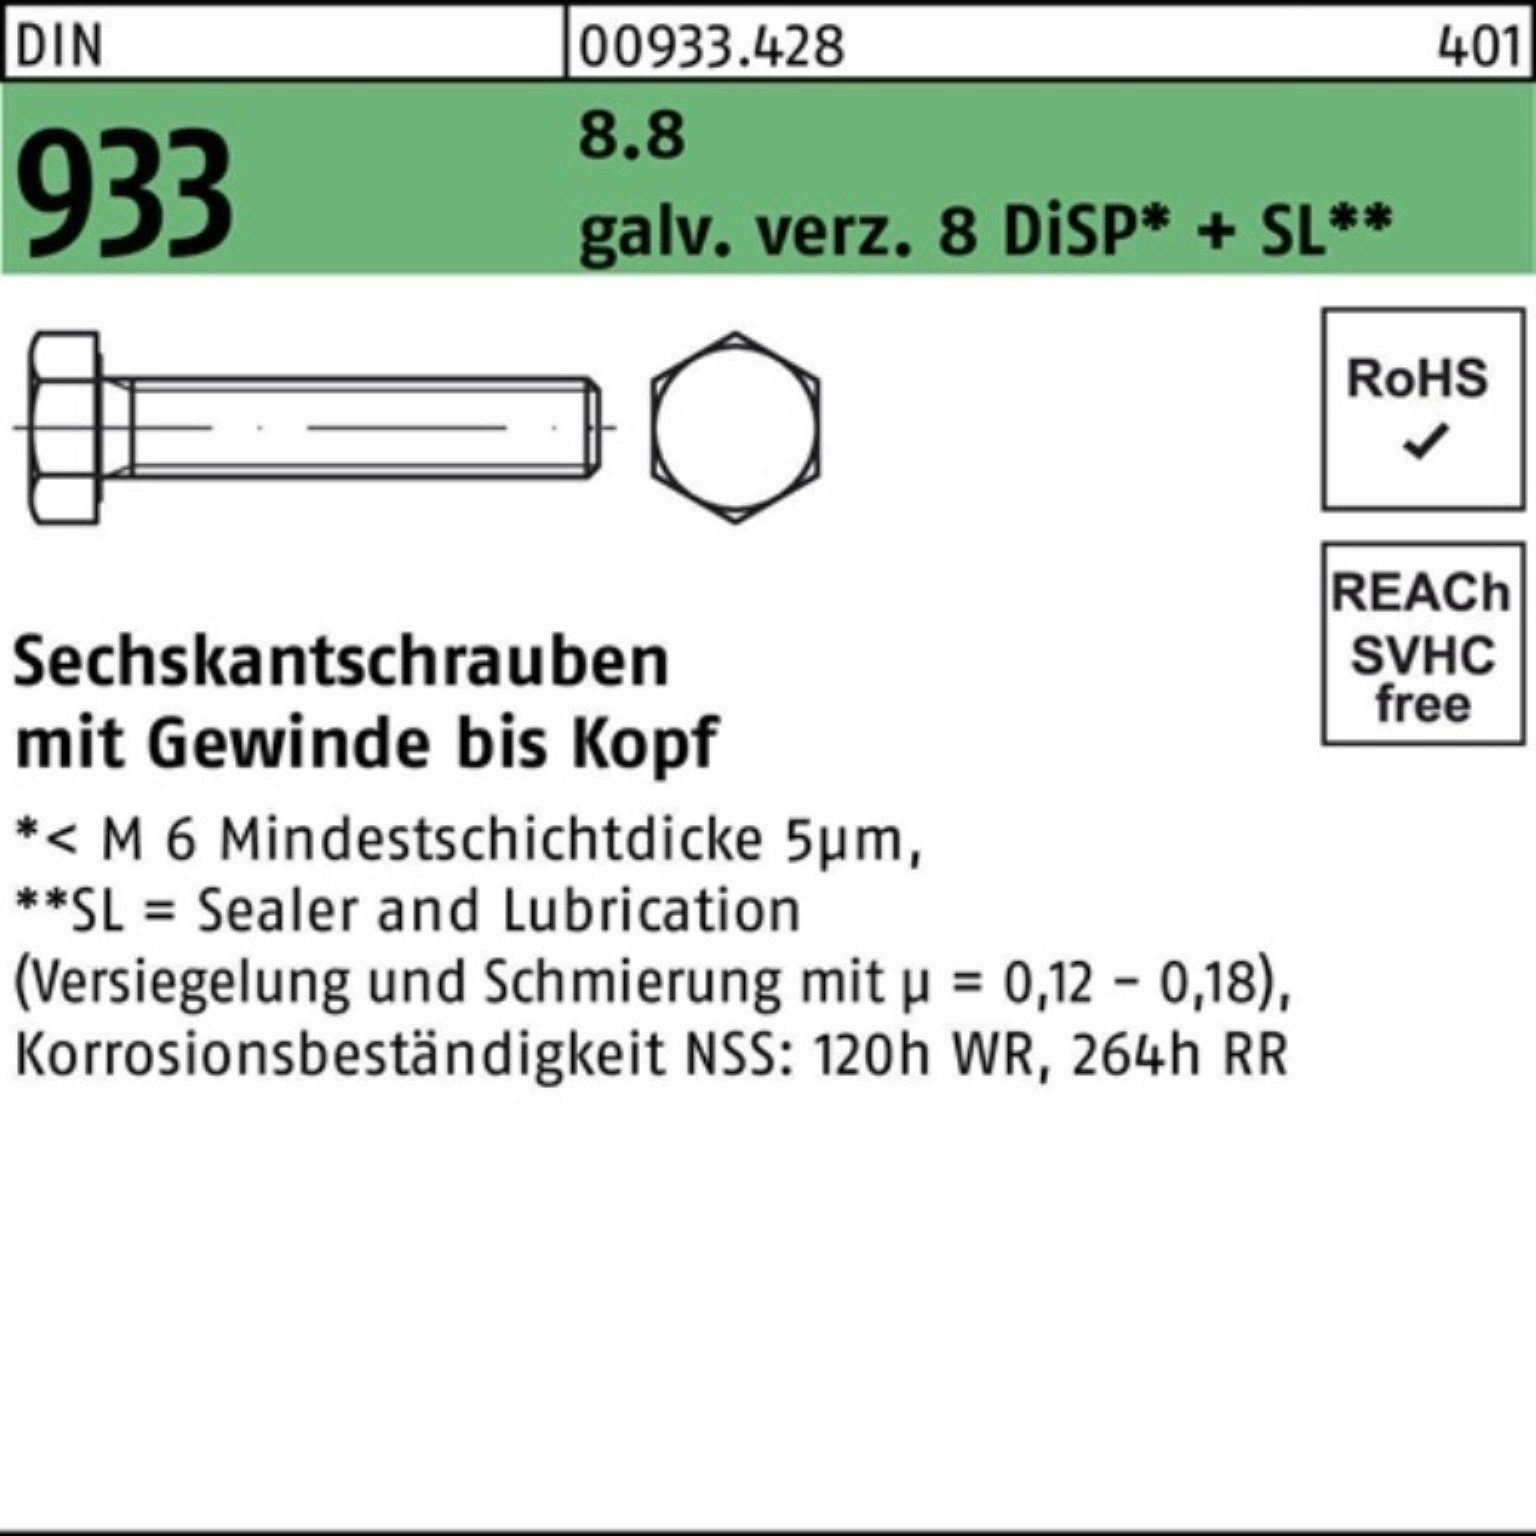 Jetzt supergünstig per Versand bestellen Reyher Sechskantschraube 933 Sechskantschraube 200er 8 SL DIN Pack + M8x DiSP 8.8 VG 14 Zn gal